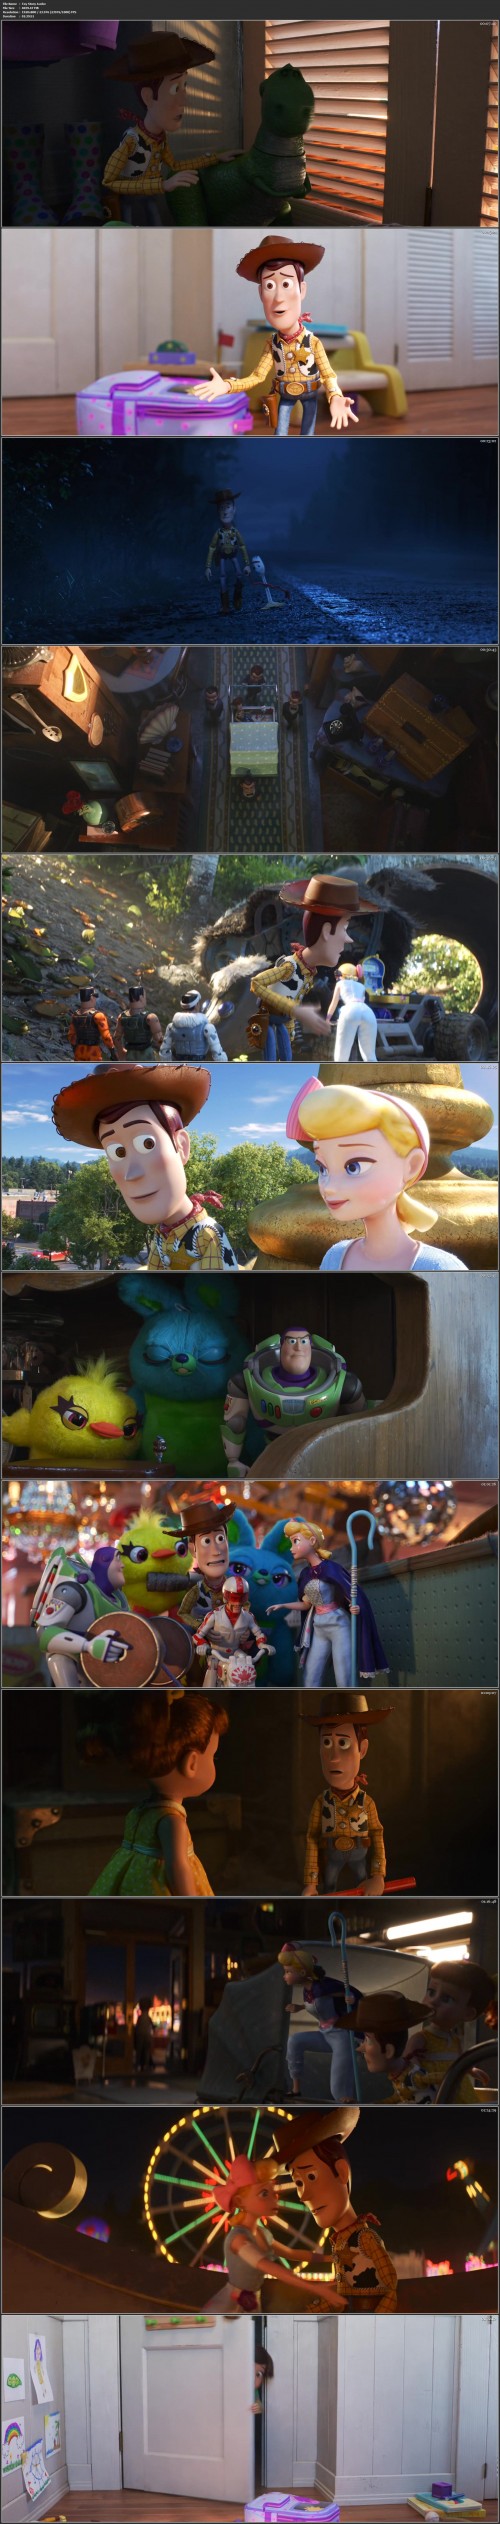 Toy Story 4.mkv